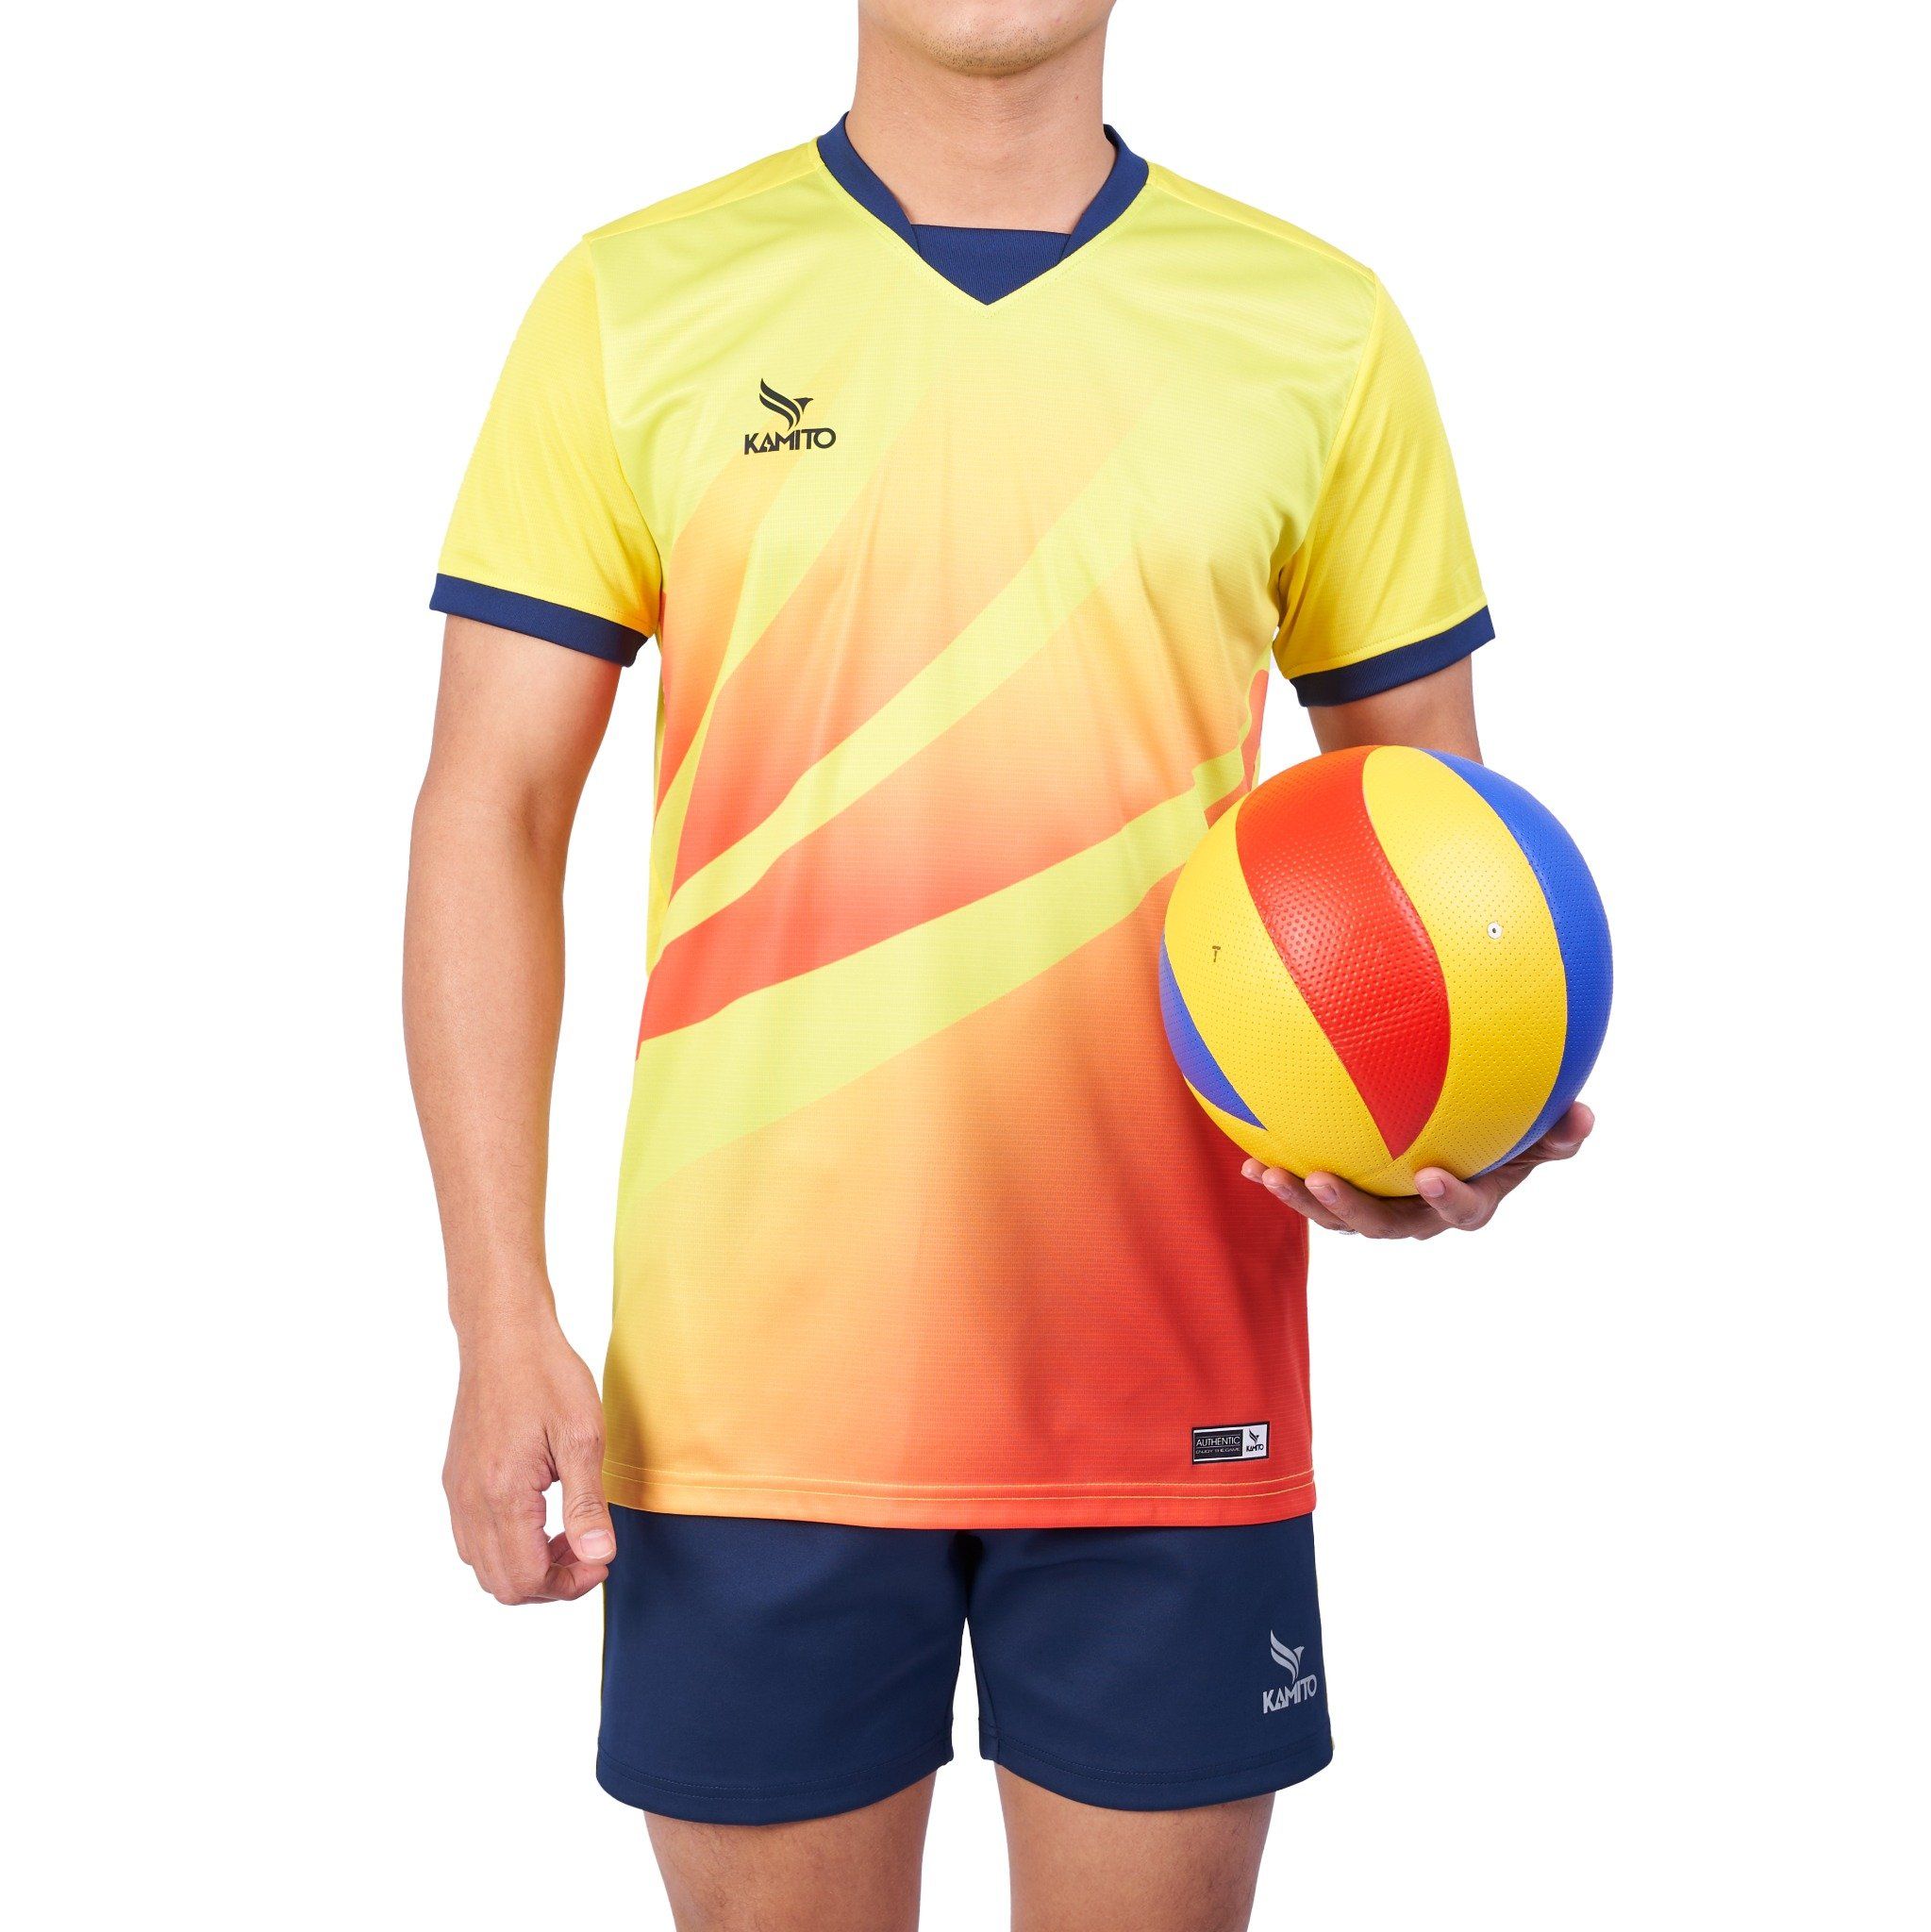  Bộ quần áo bóng chuyền Kamito Libero Nam 